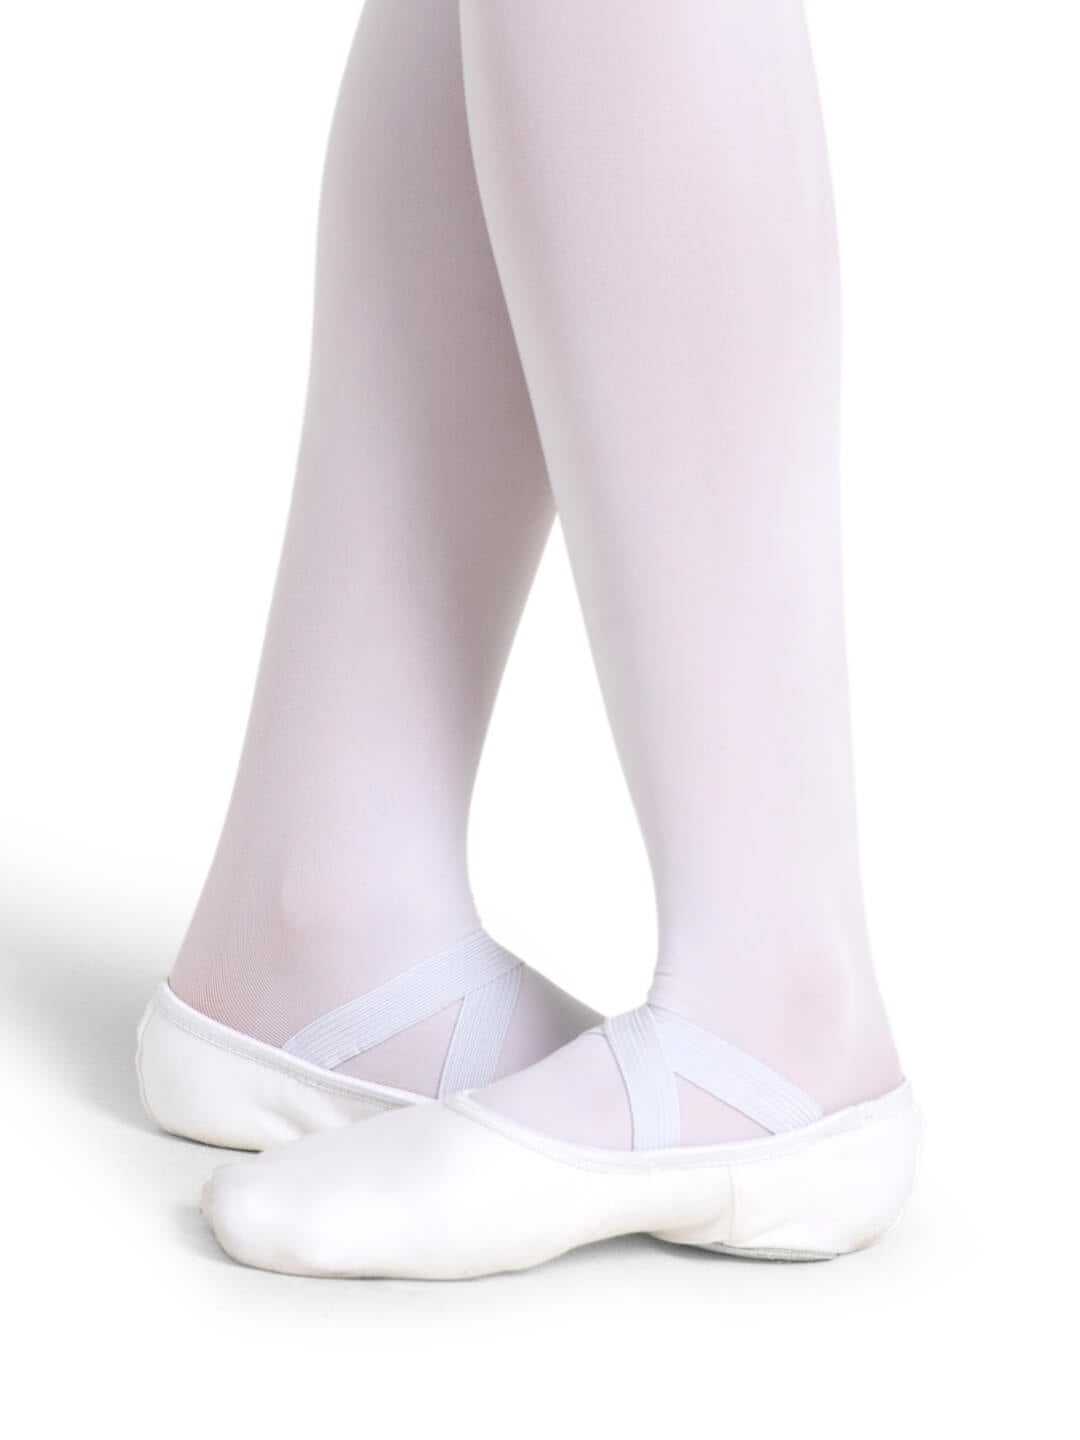  Capezio Hanami Adult Canvas Ballet Shoe